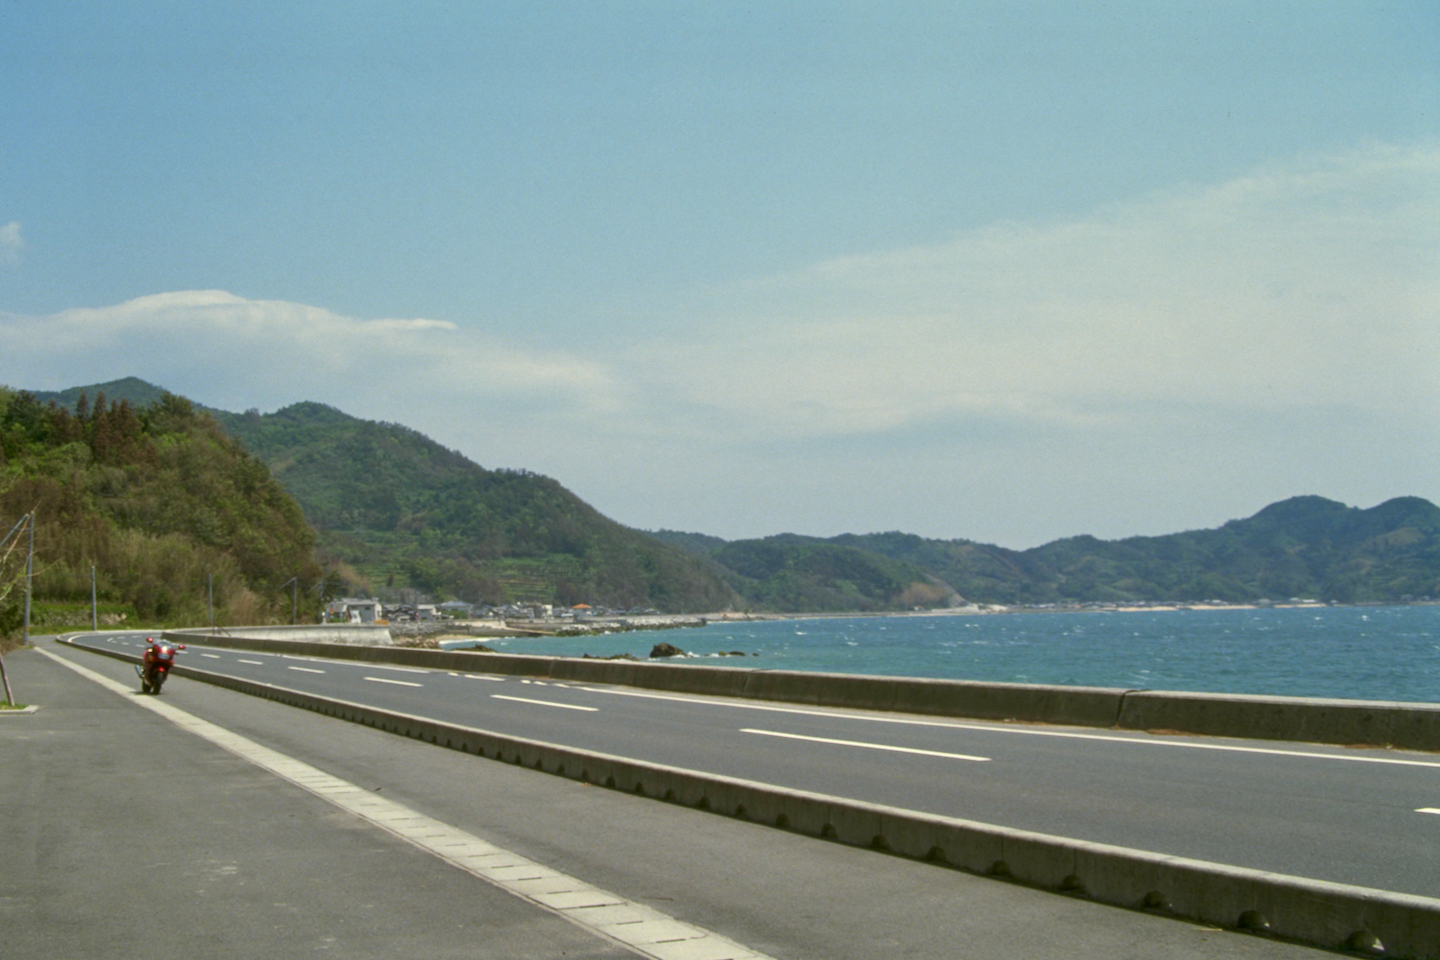 Yamaguchi pref. road 4